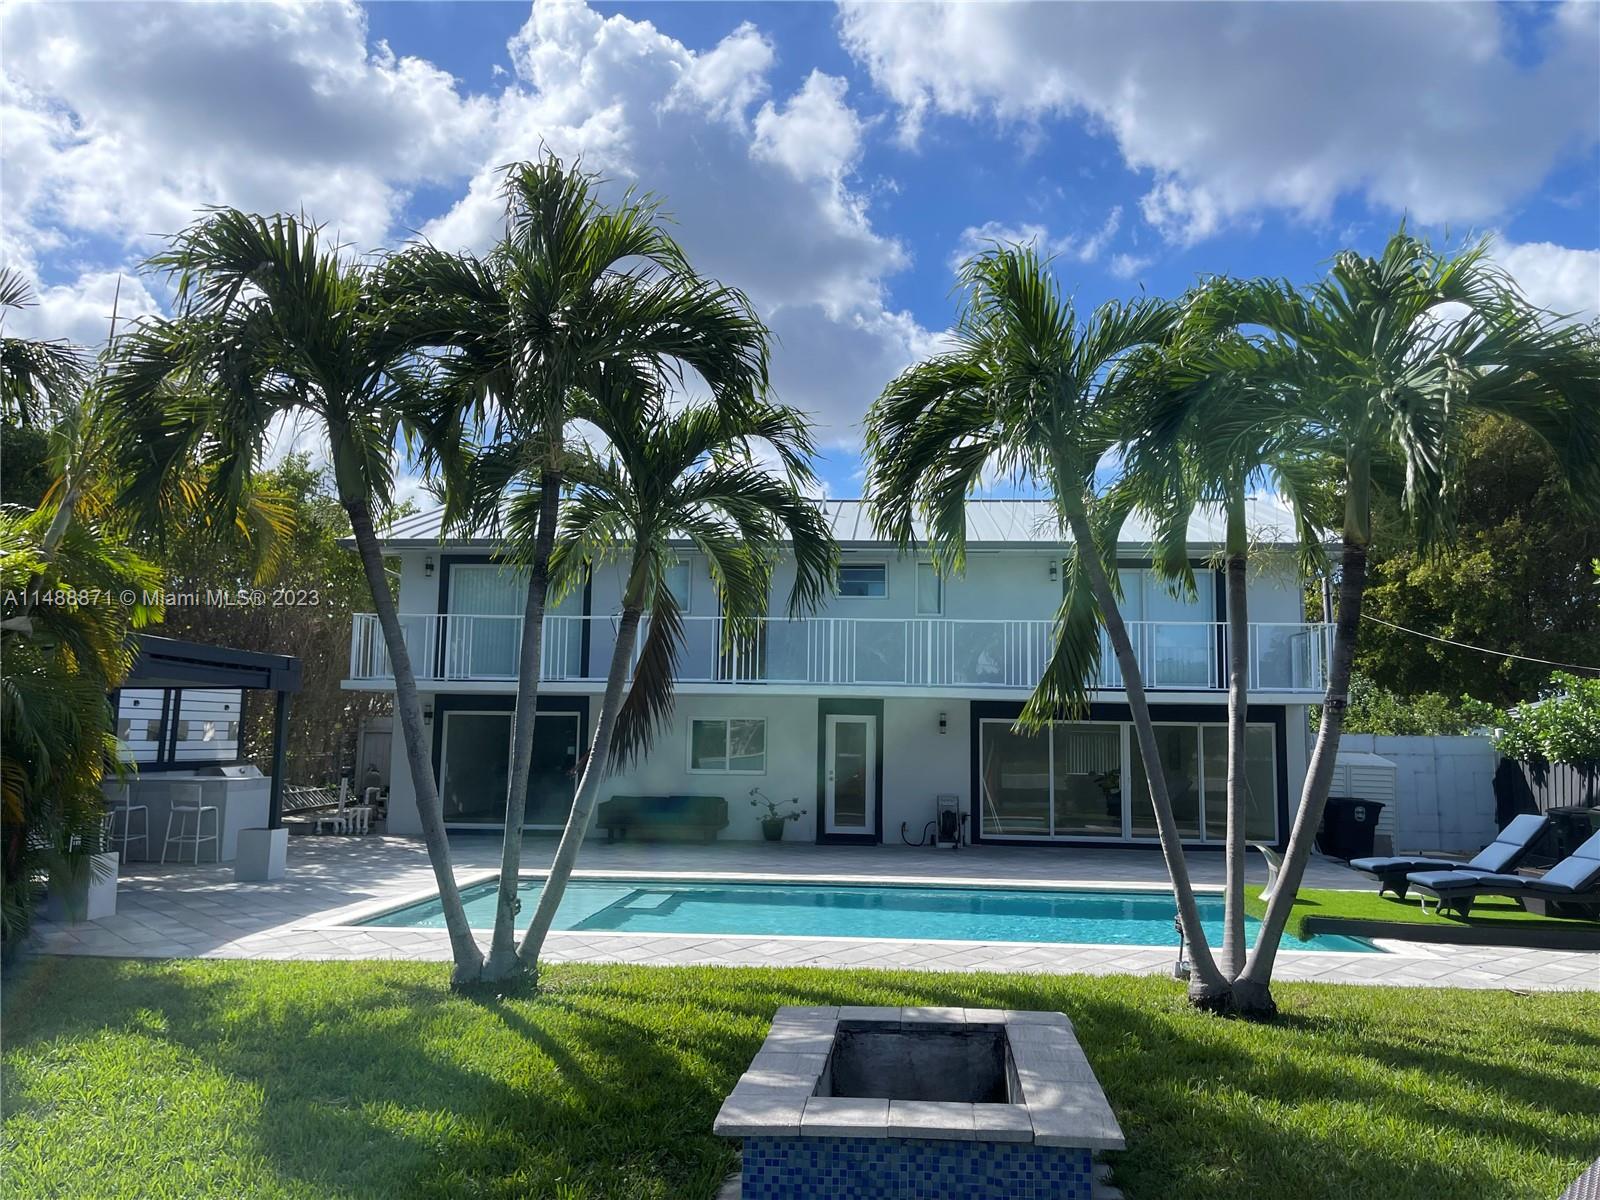 View North Miami, FL 33181 house